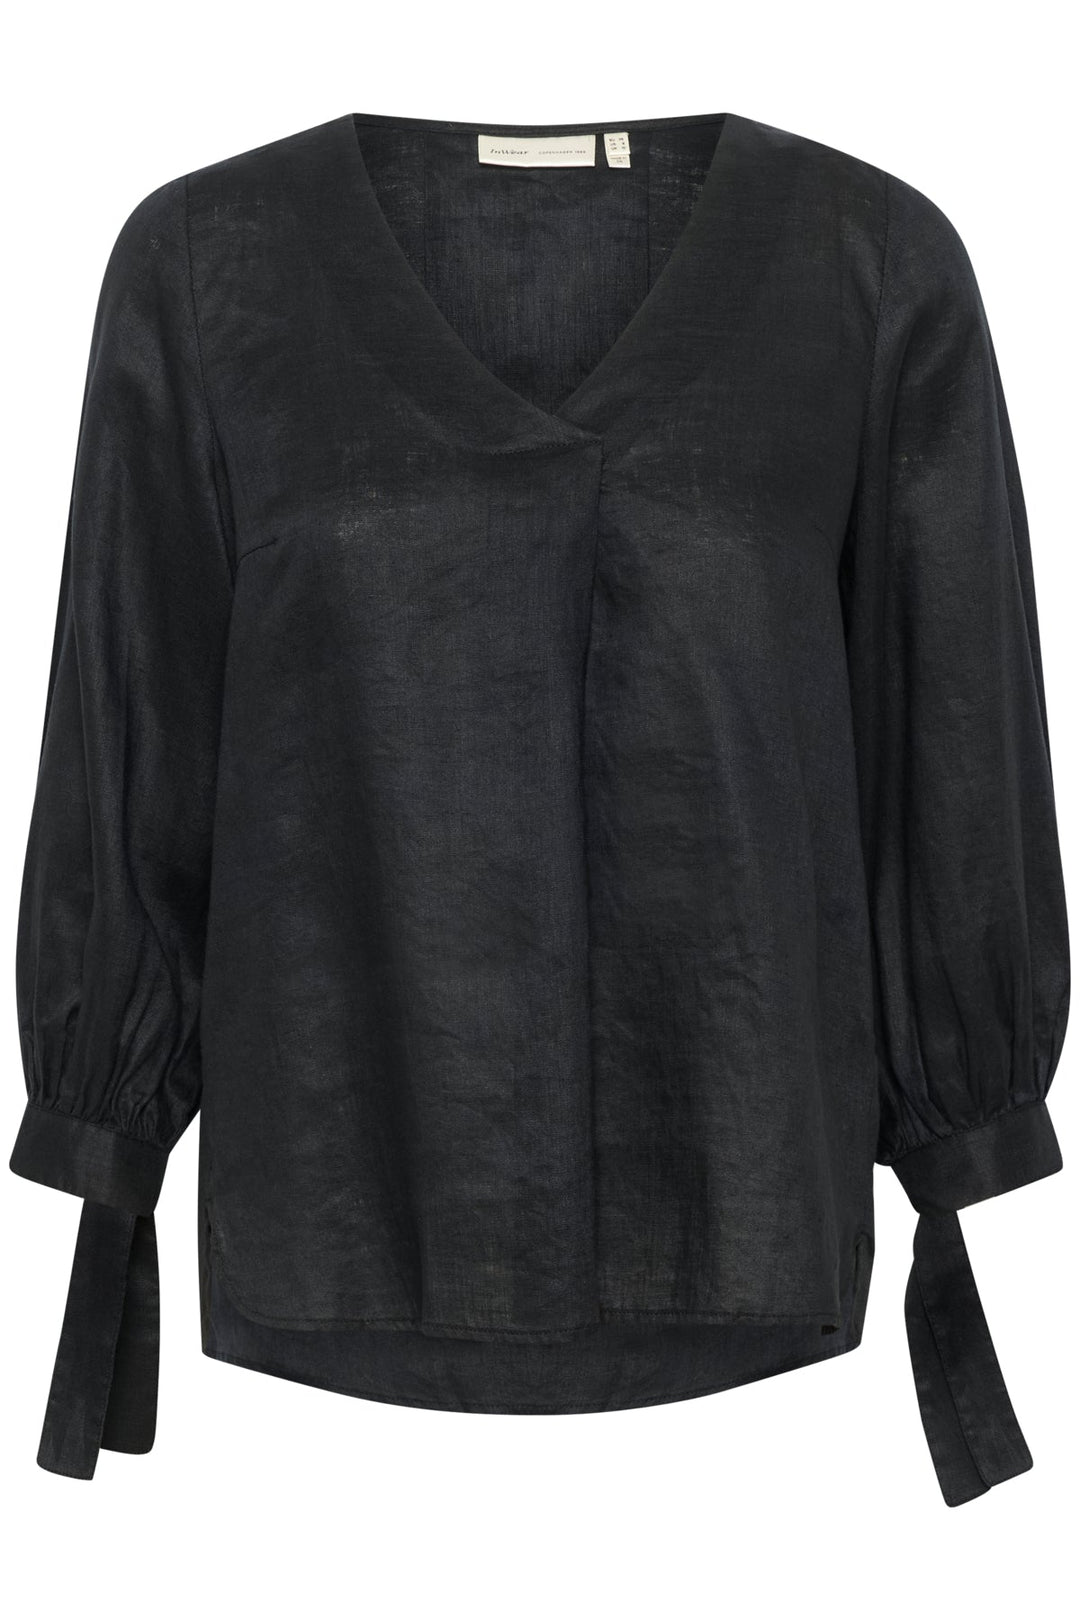 Ezraiw Blouse Black | Skjorter og bluser | Smuk - Dameklær på nett